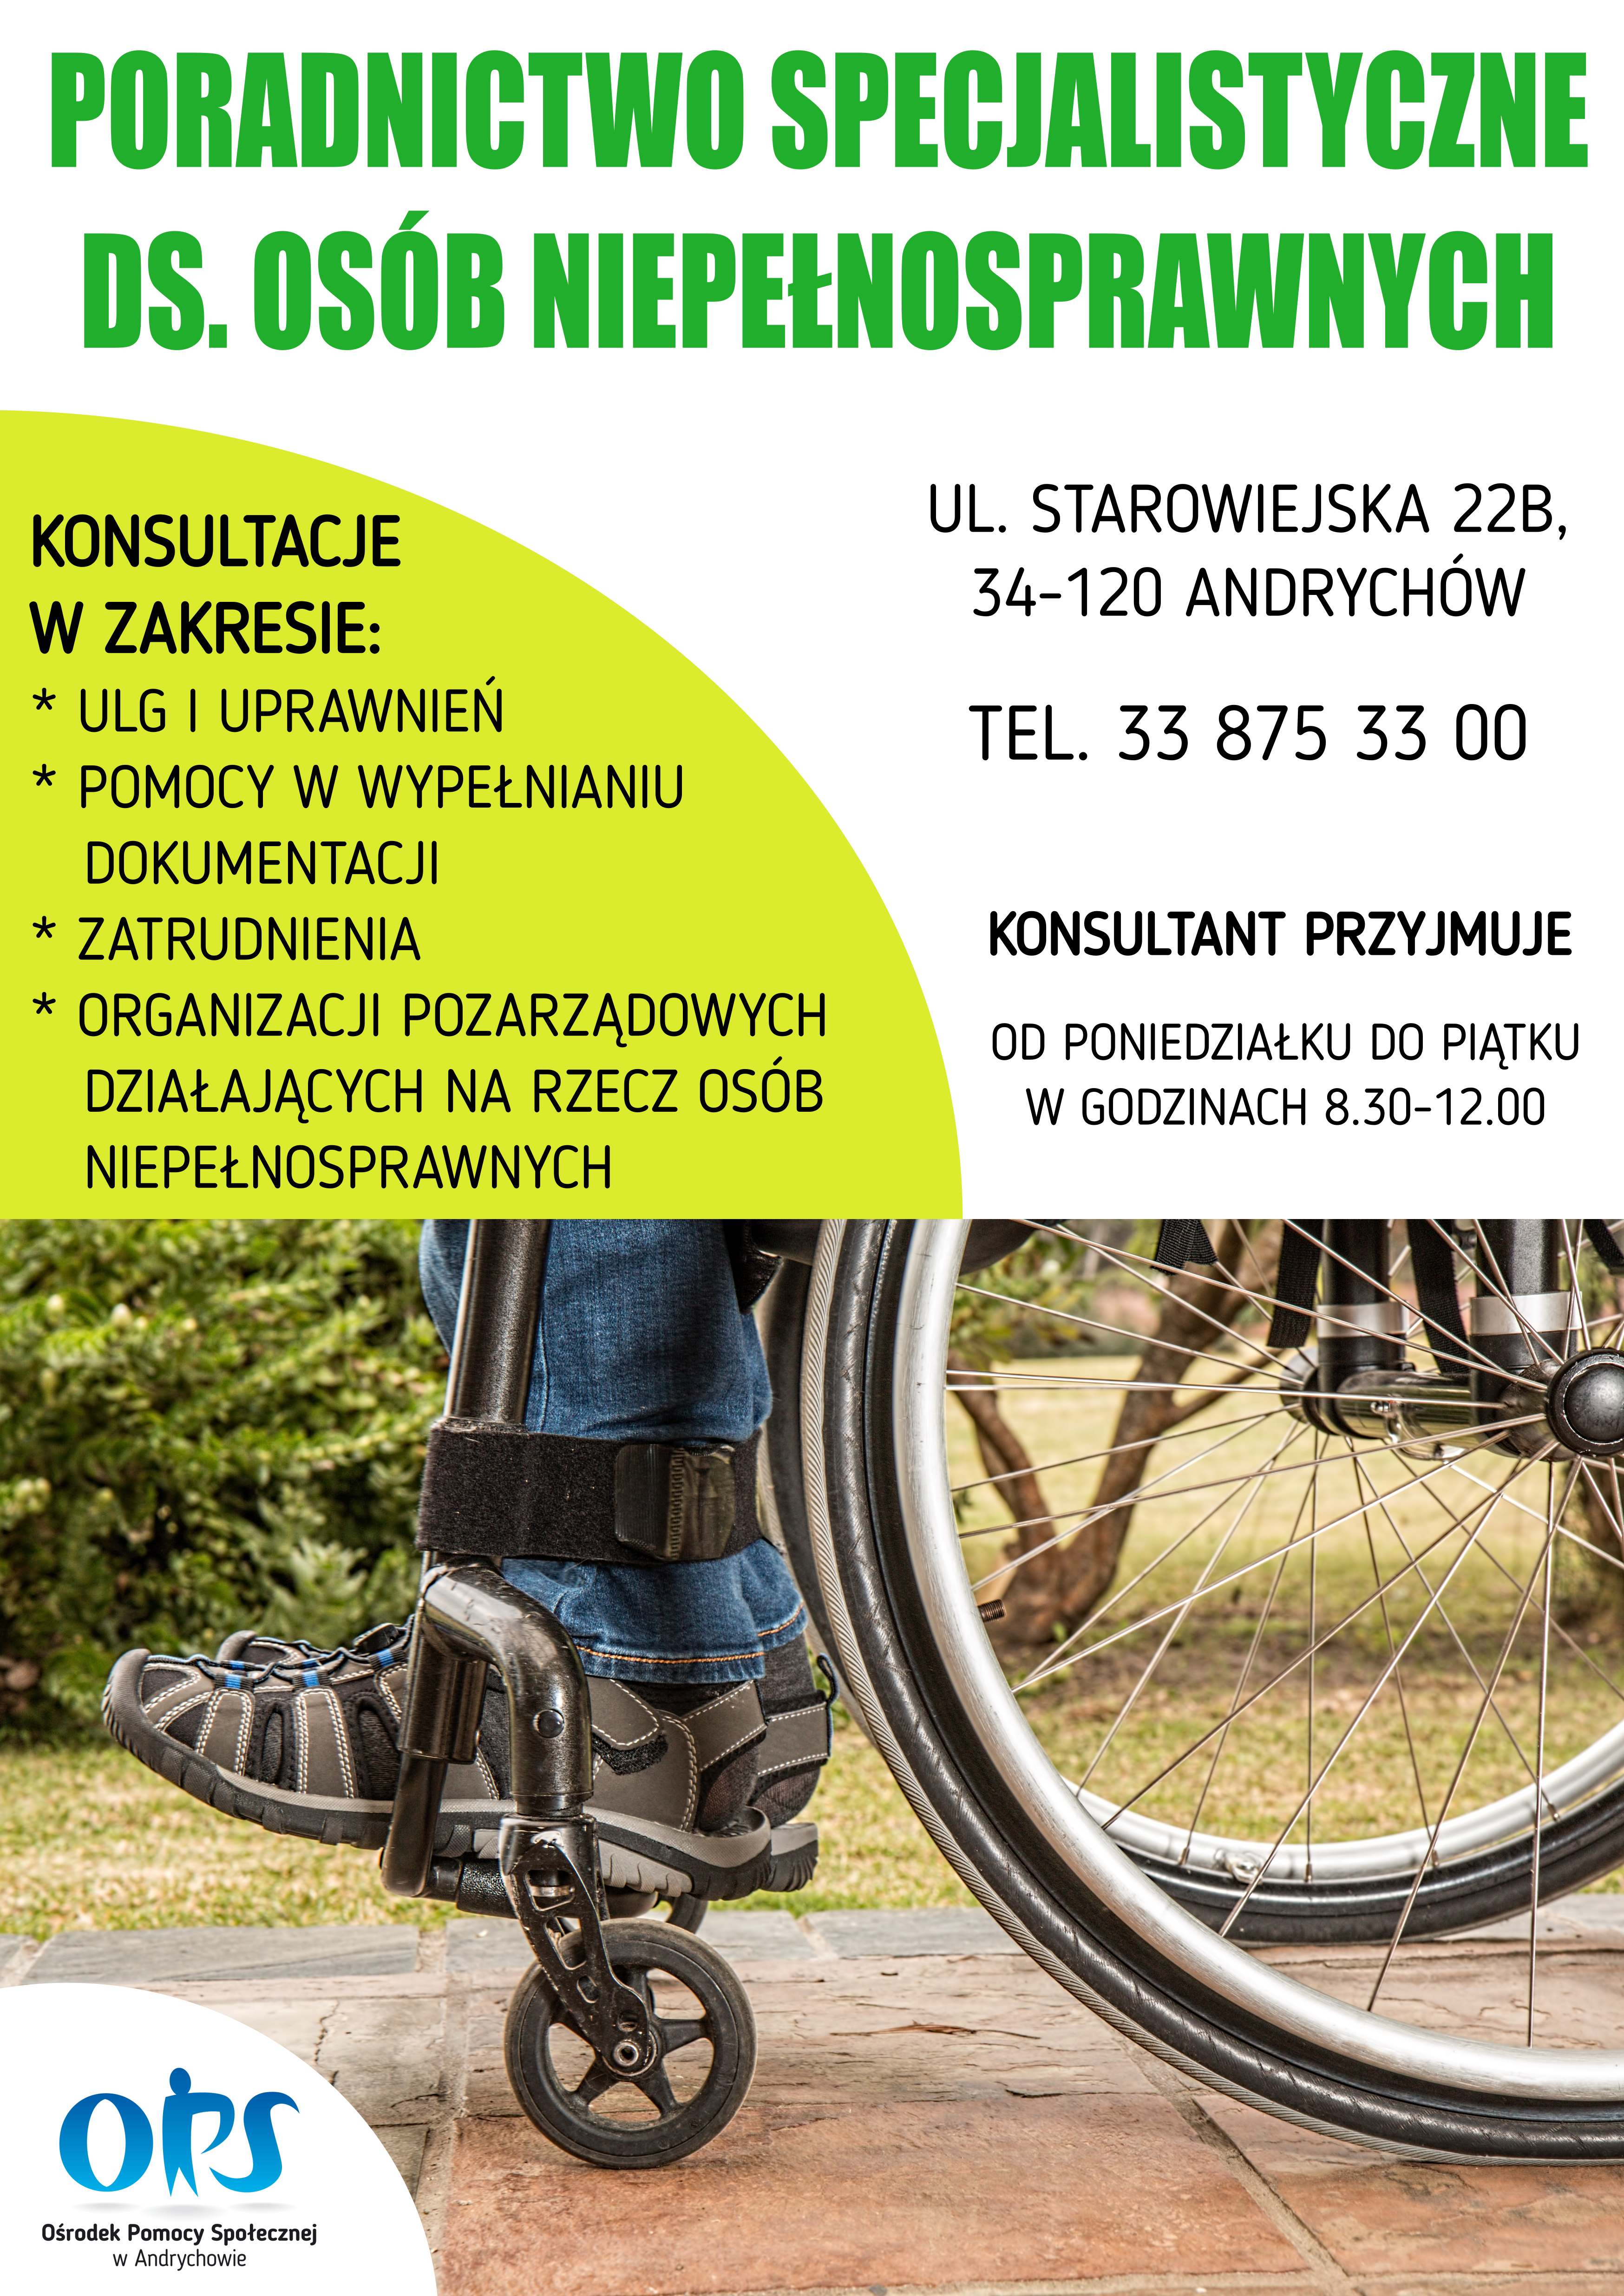 plakat - zdjęcie wózka inwalidzkiego, logo Ośrodka Pomocy Społecznej w Andrychowie, informacje zawarte w treści artykułu